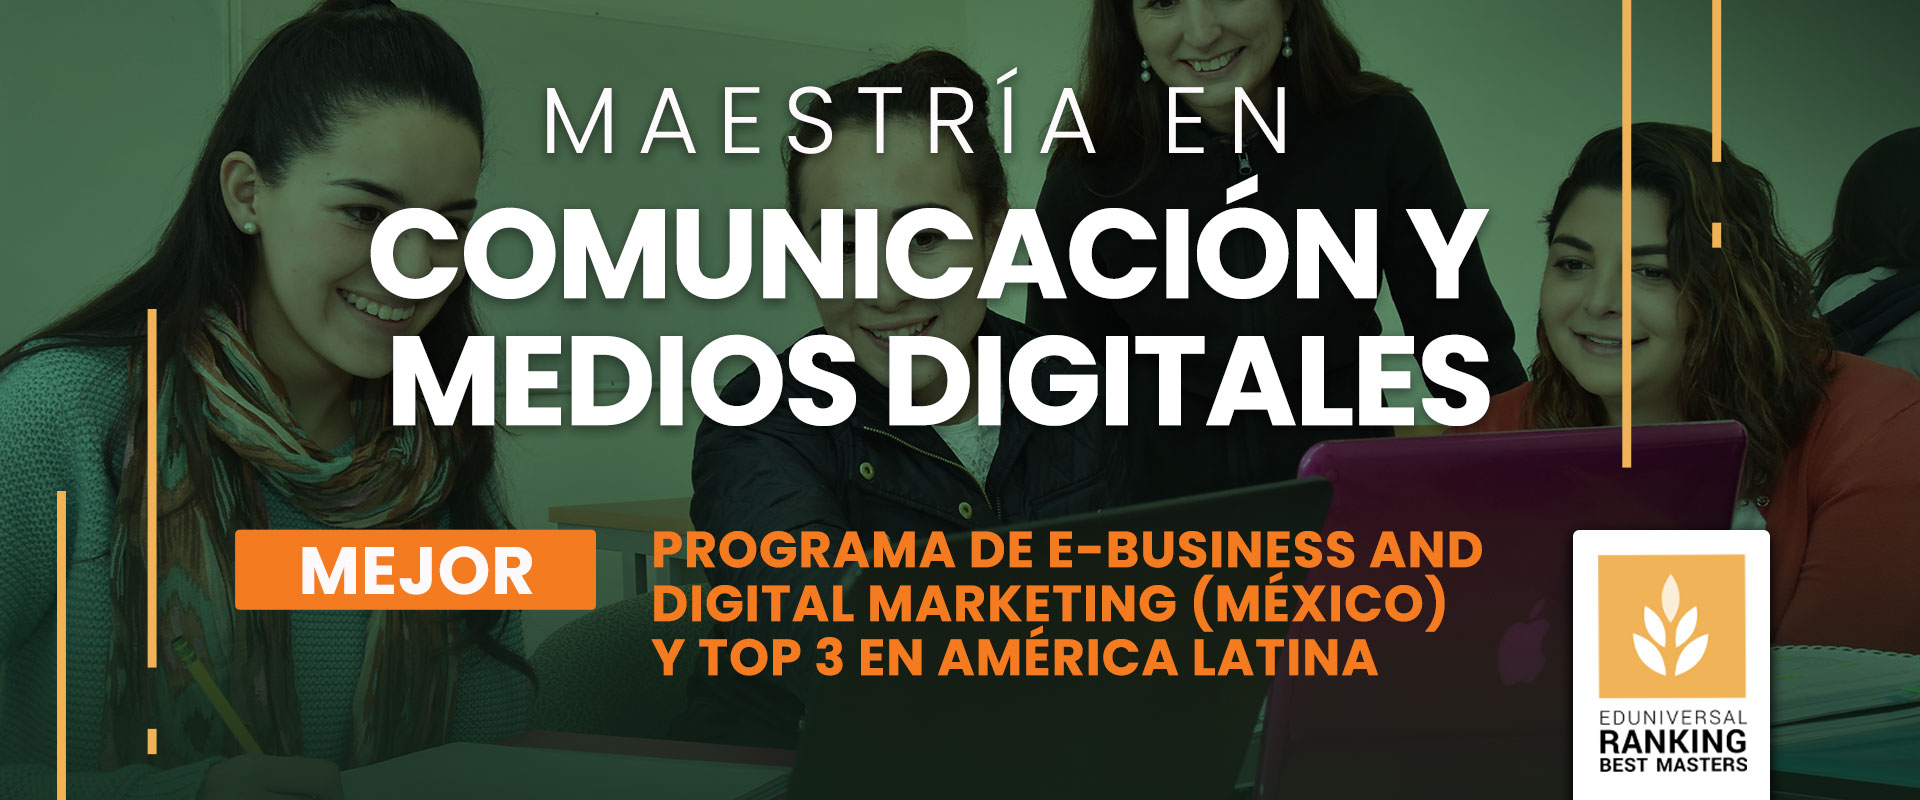 Maestría en Comunicación y Medios Digitales - Universidad de las Américas Puebla (UDLAP)